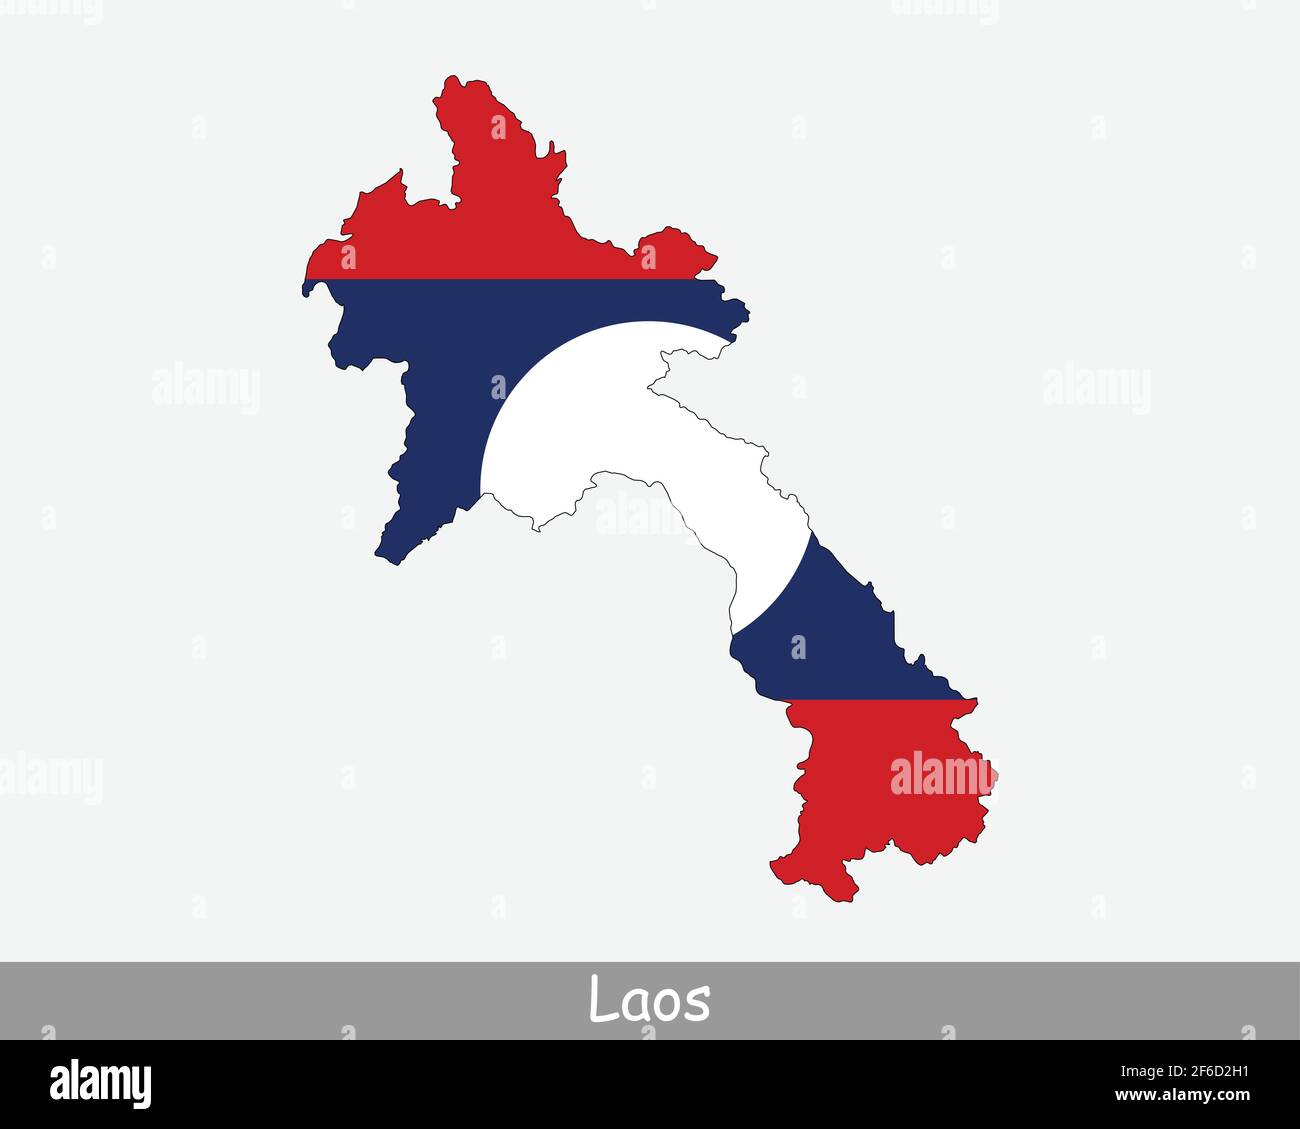 Mapa de Laos Bandera. Mapa de la República Democrática Popular Lao con la bandera nacional laosiana aislada sobre fondo blanco. Ilustración vectorial. Ilustración del Vector